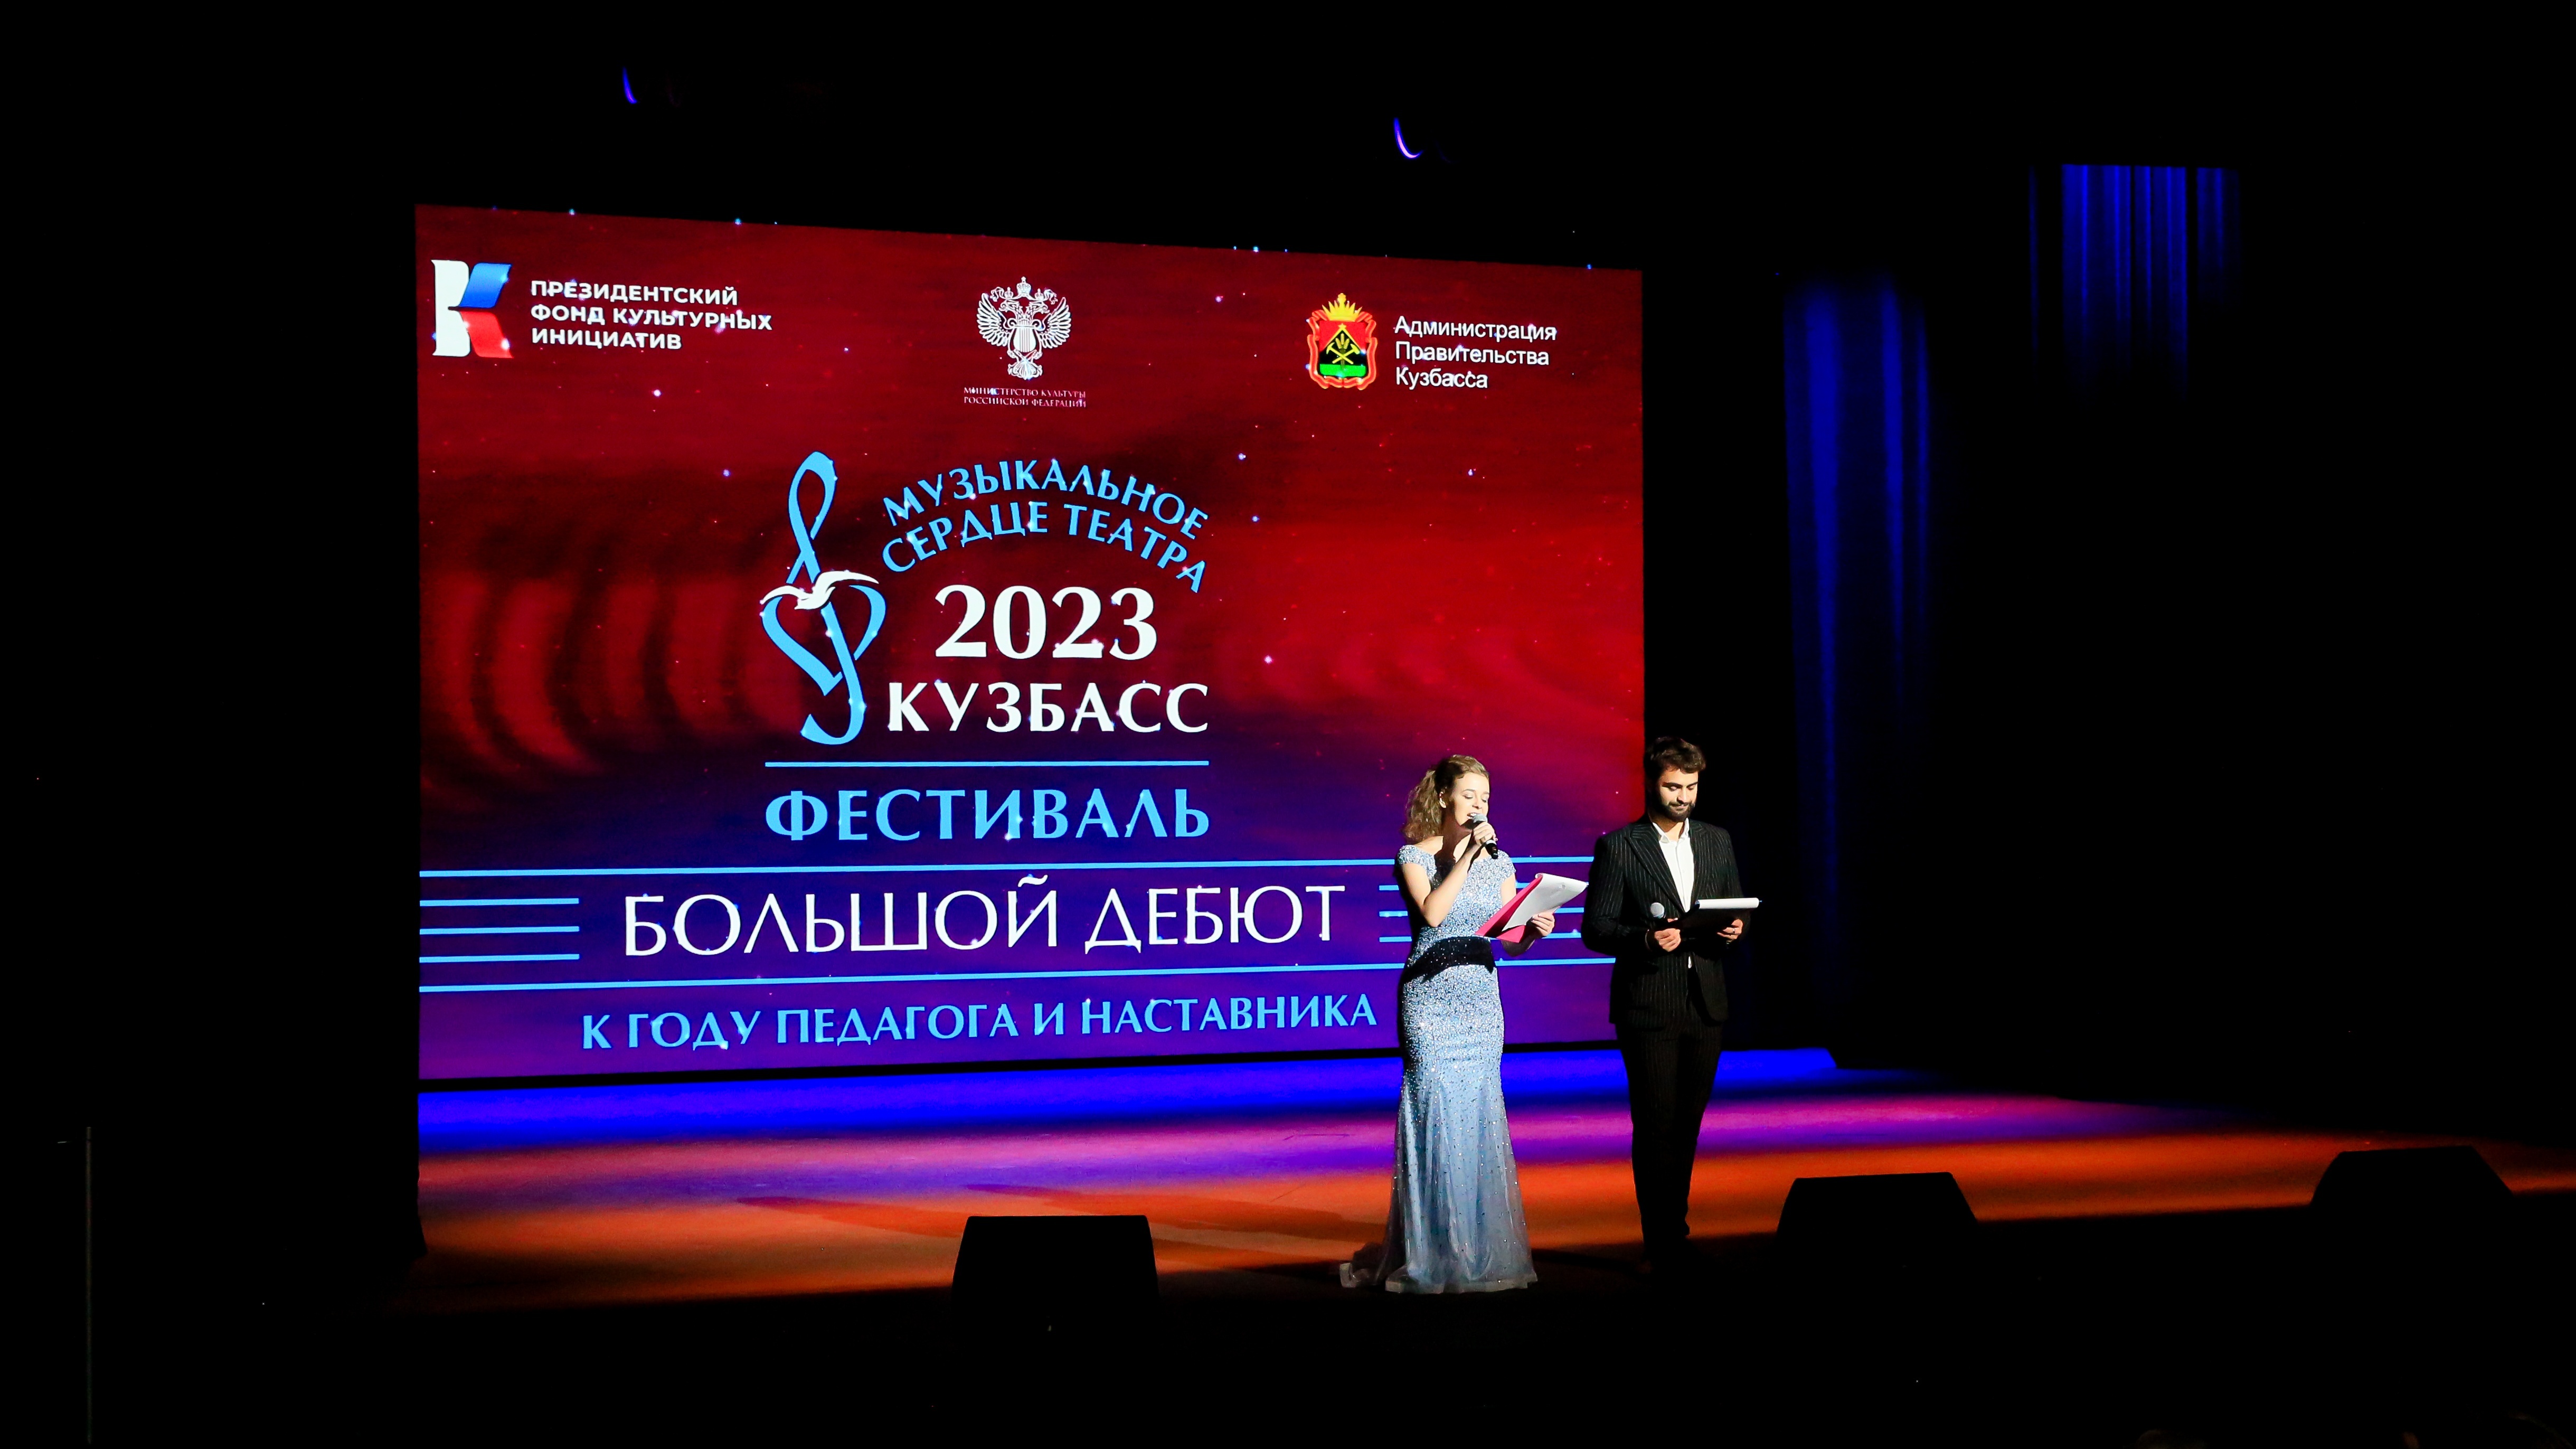 Фестиваль «Музыкальное сердце театра» стартовал в Кузбассе с «Большого дебюта»